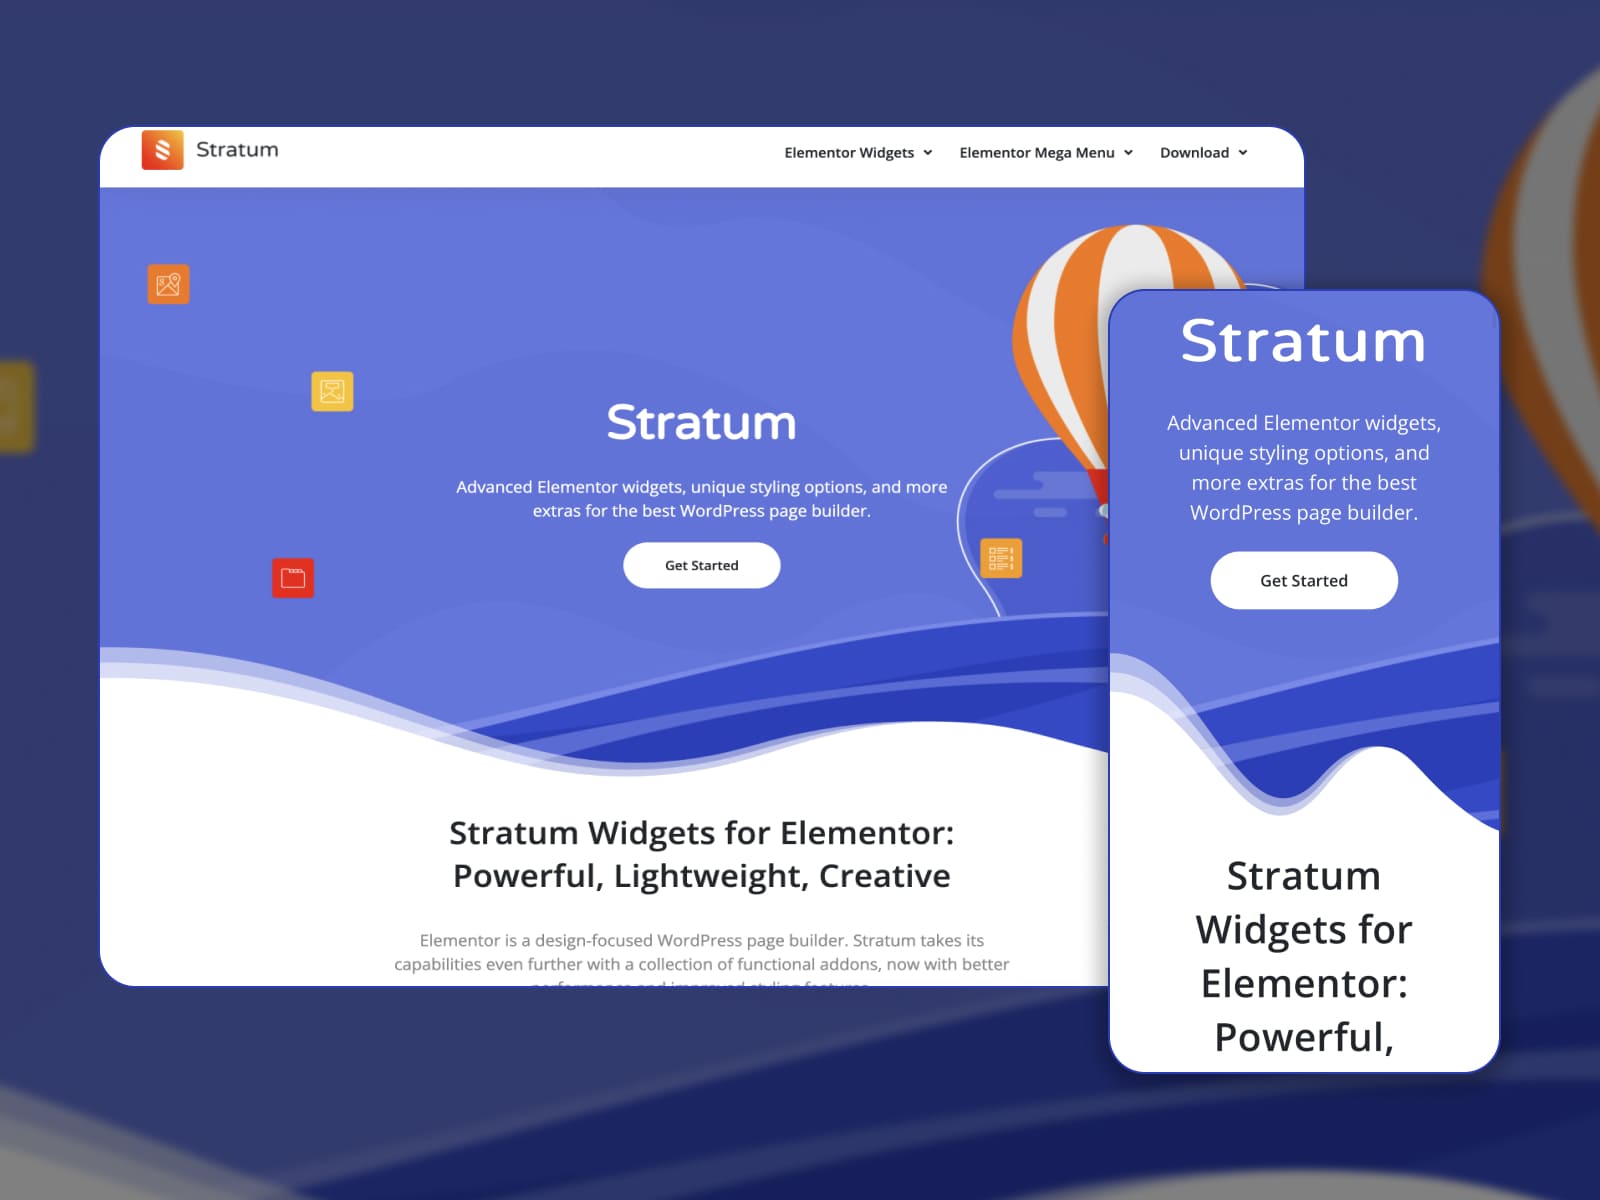 Stratum 免费小部件的登陆页面。